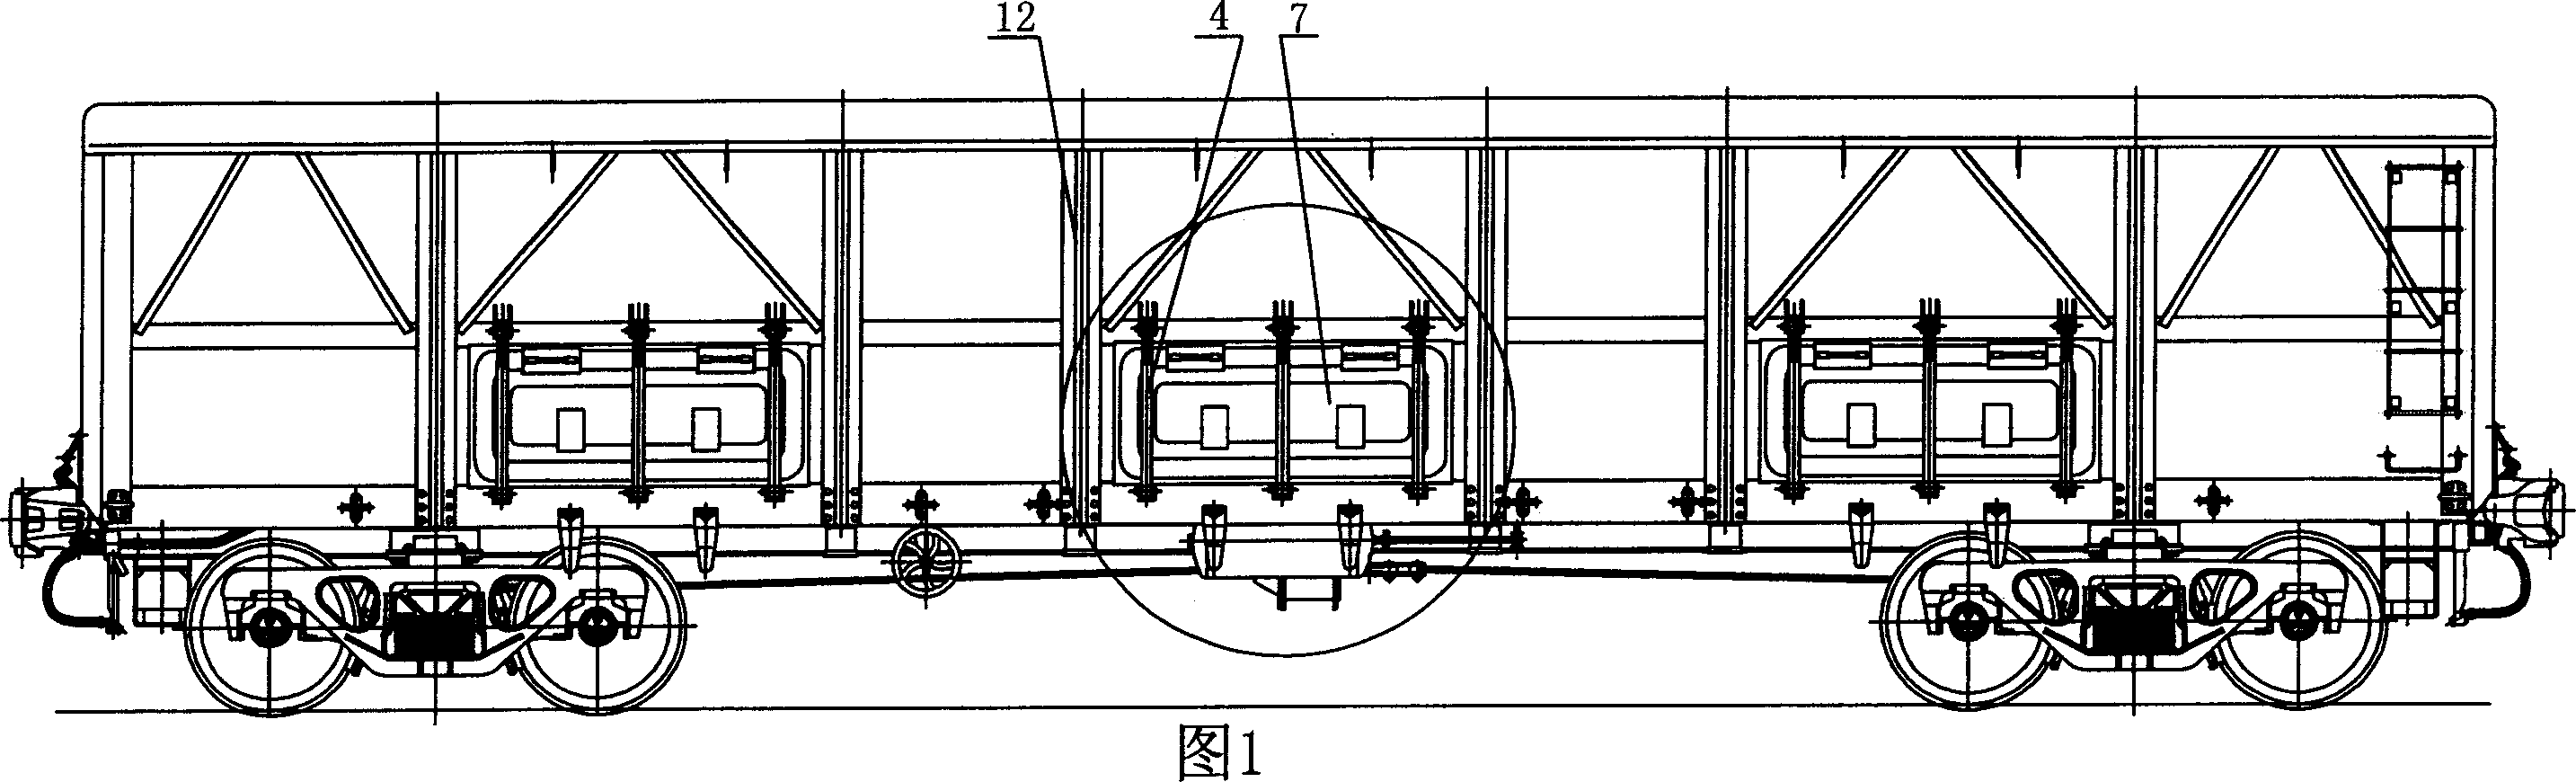 Door lock at underside of open freight car of railroad freingt activity